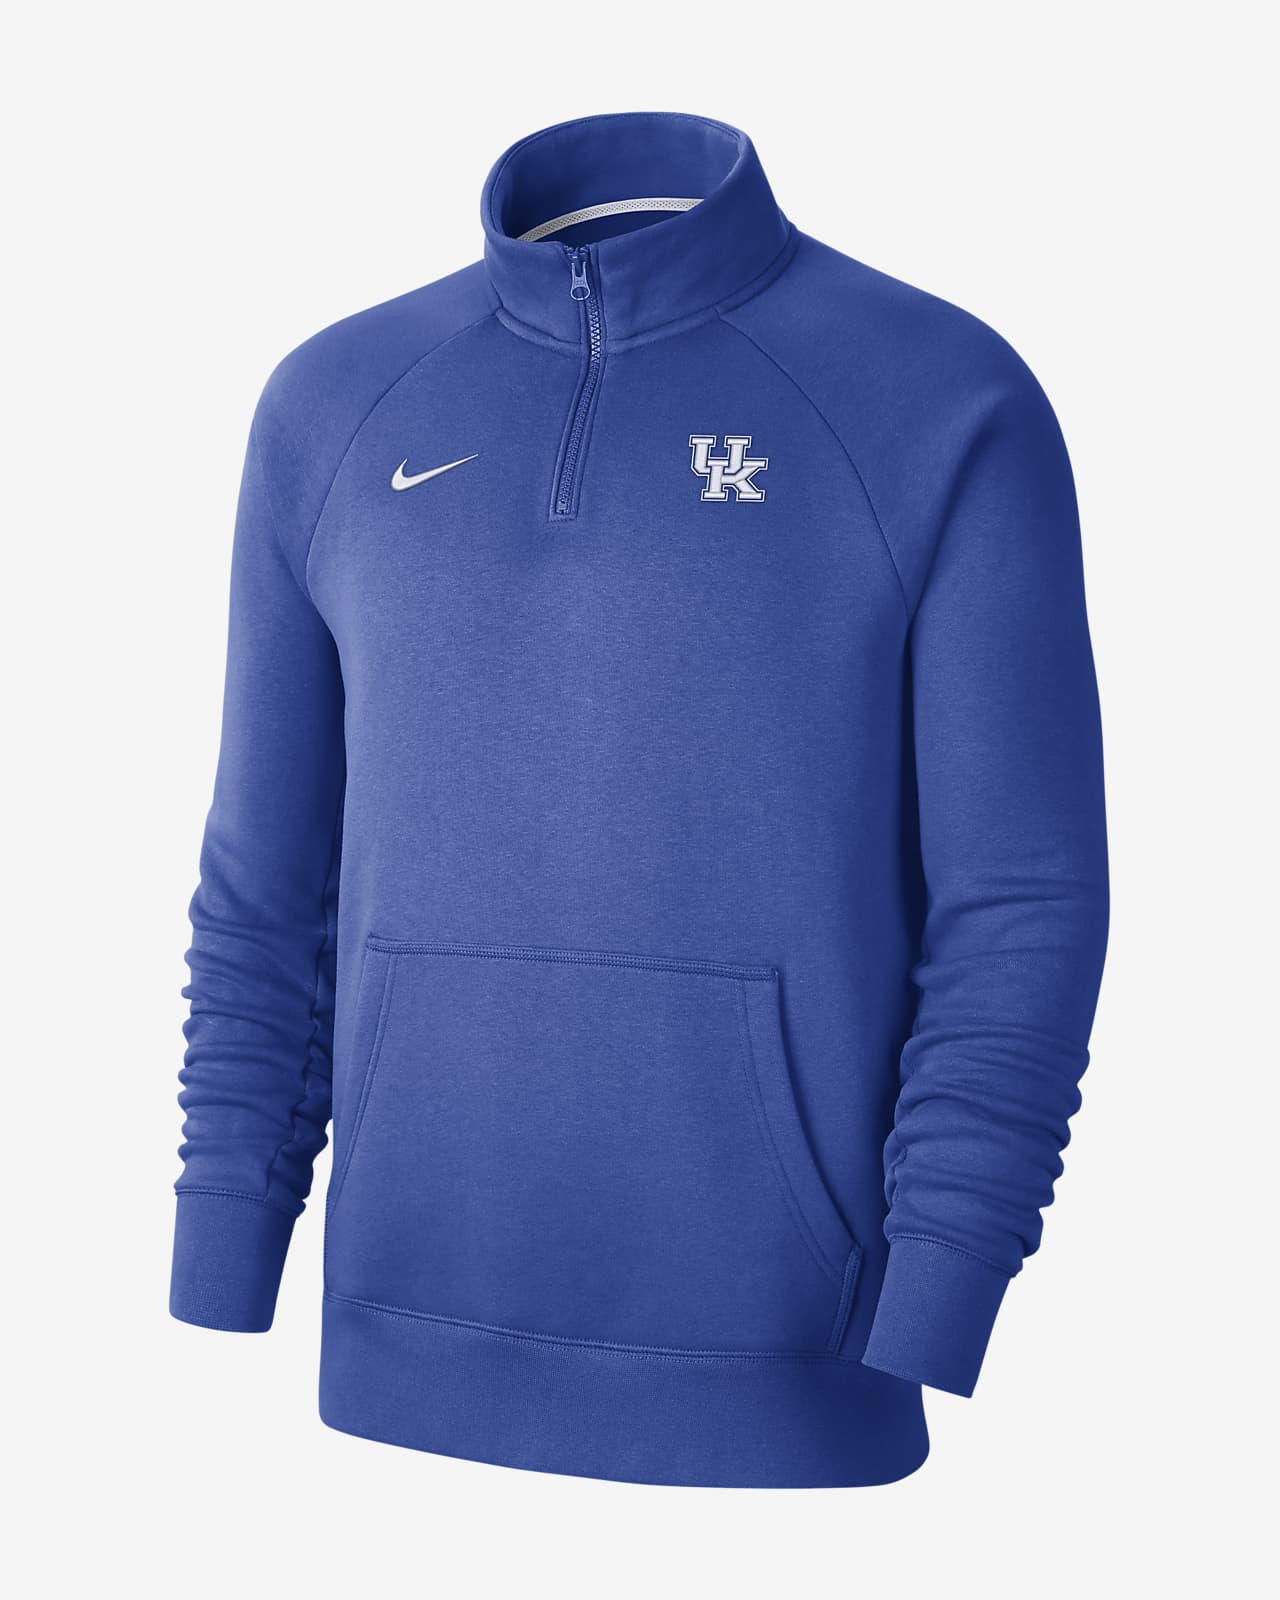 Nike College (Kentucky) Men's 1/4-Zip Fleece Top